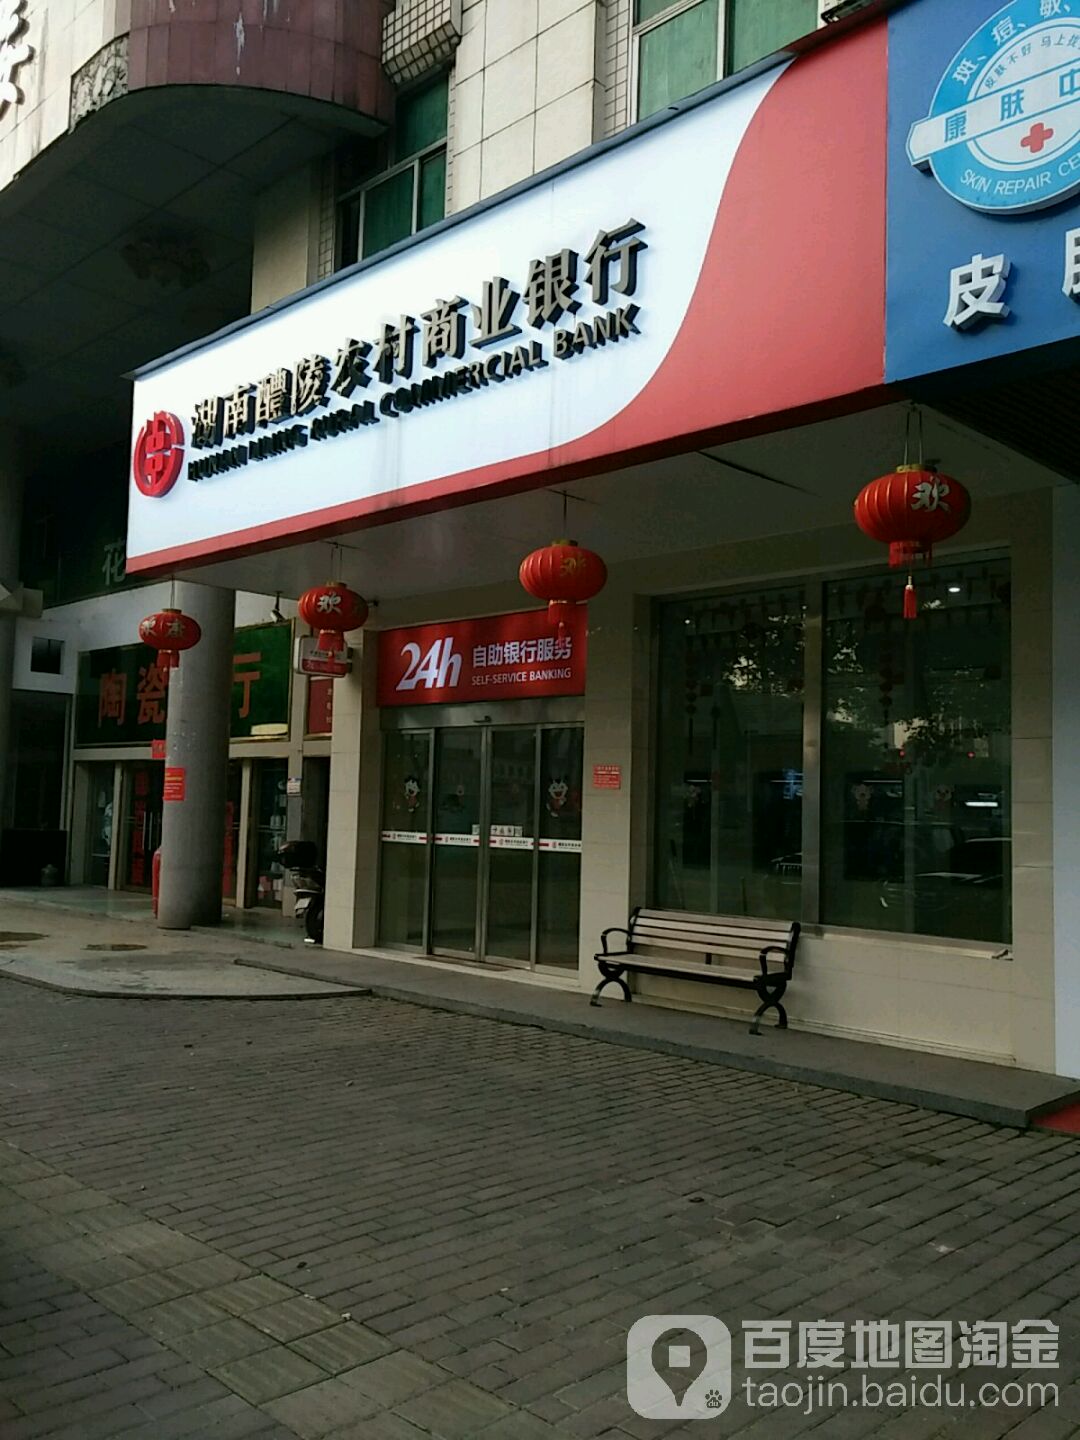 湖南醴陵農村商業銀行24小時自助銀行